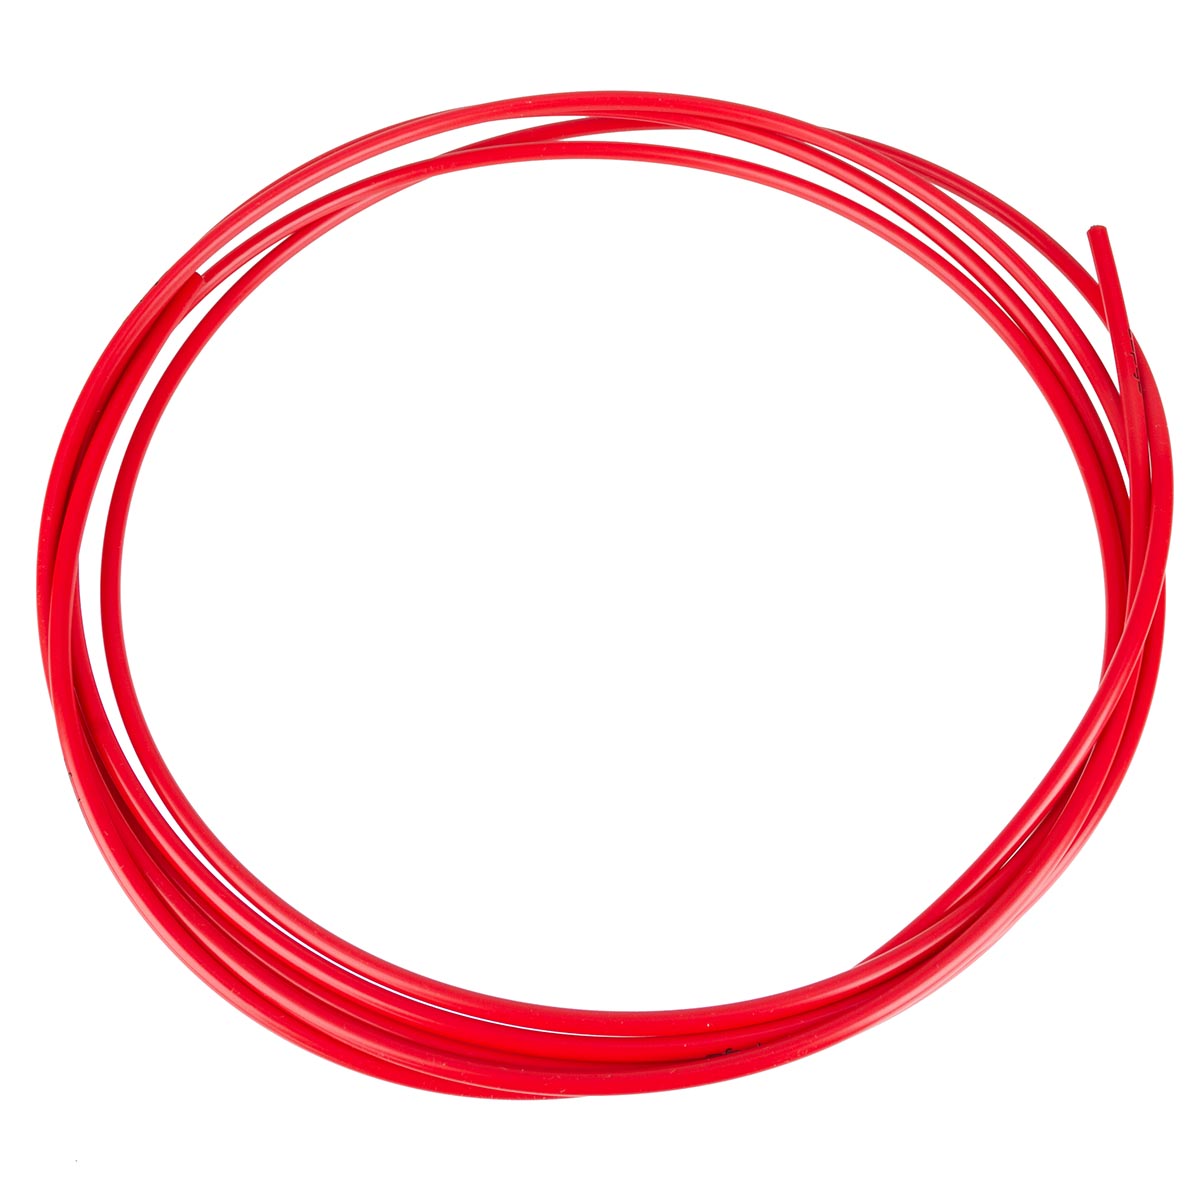 Capgo Cable Systems Tubo di Protezione per Filo Cambio Blue Line Tomato Rosso